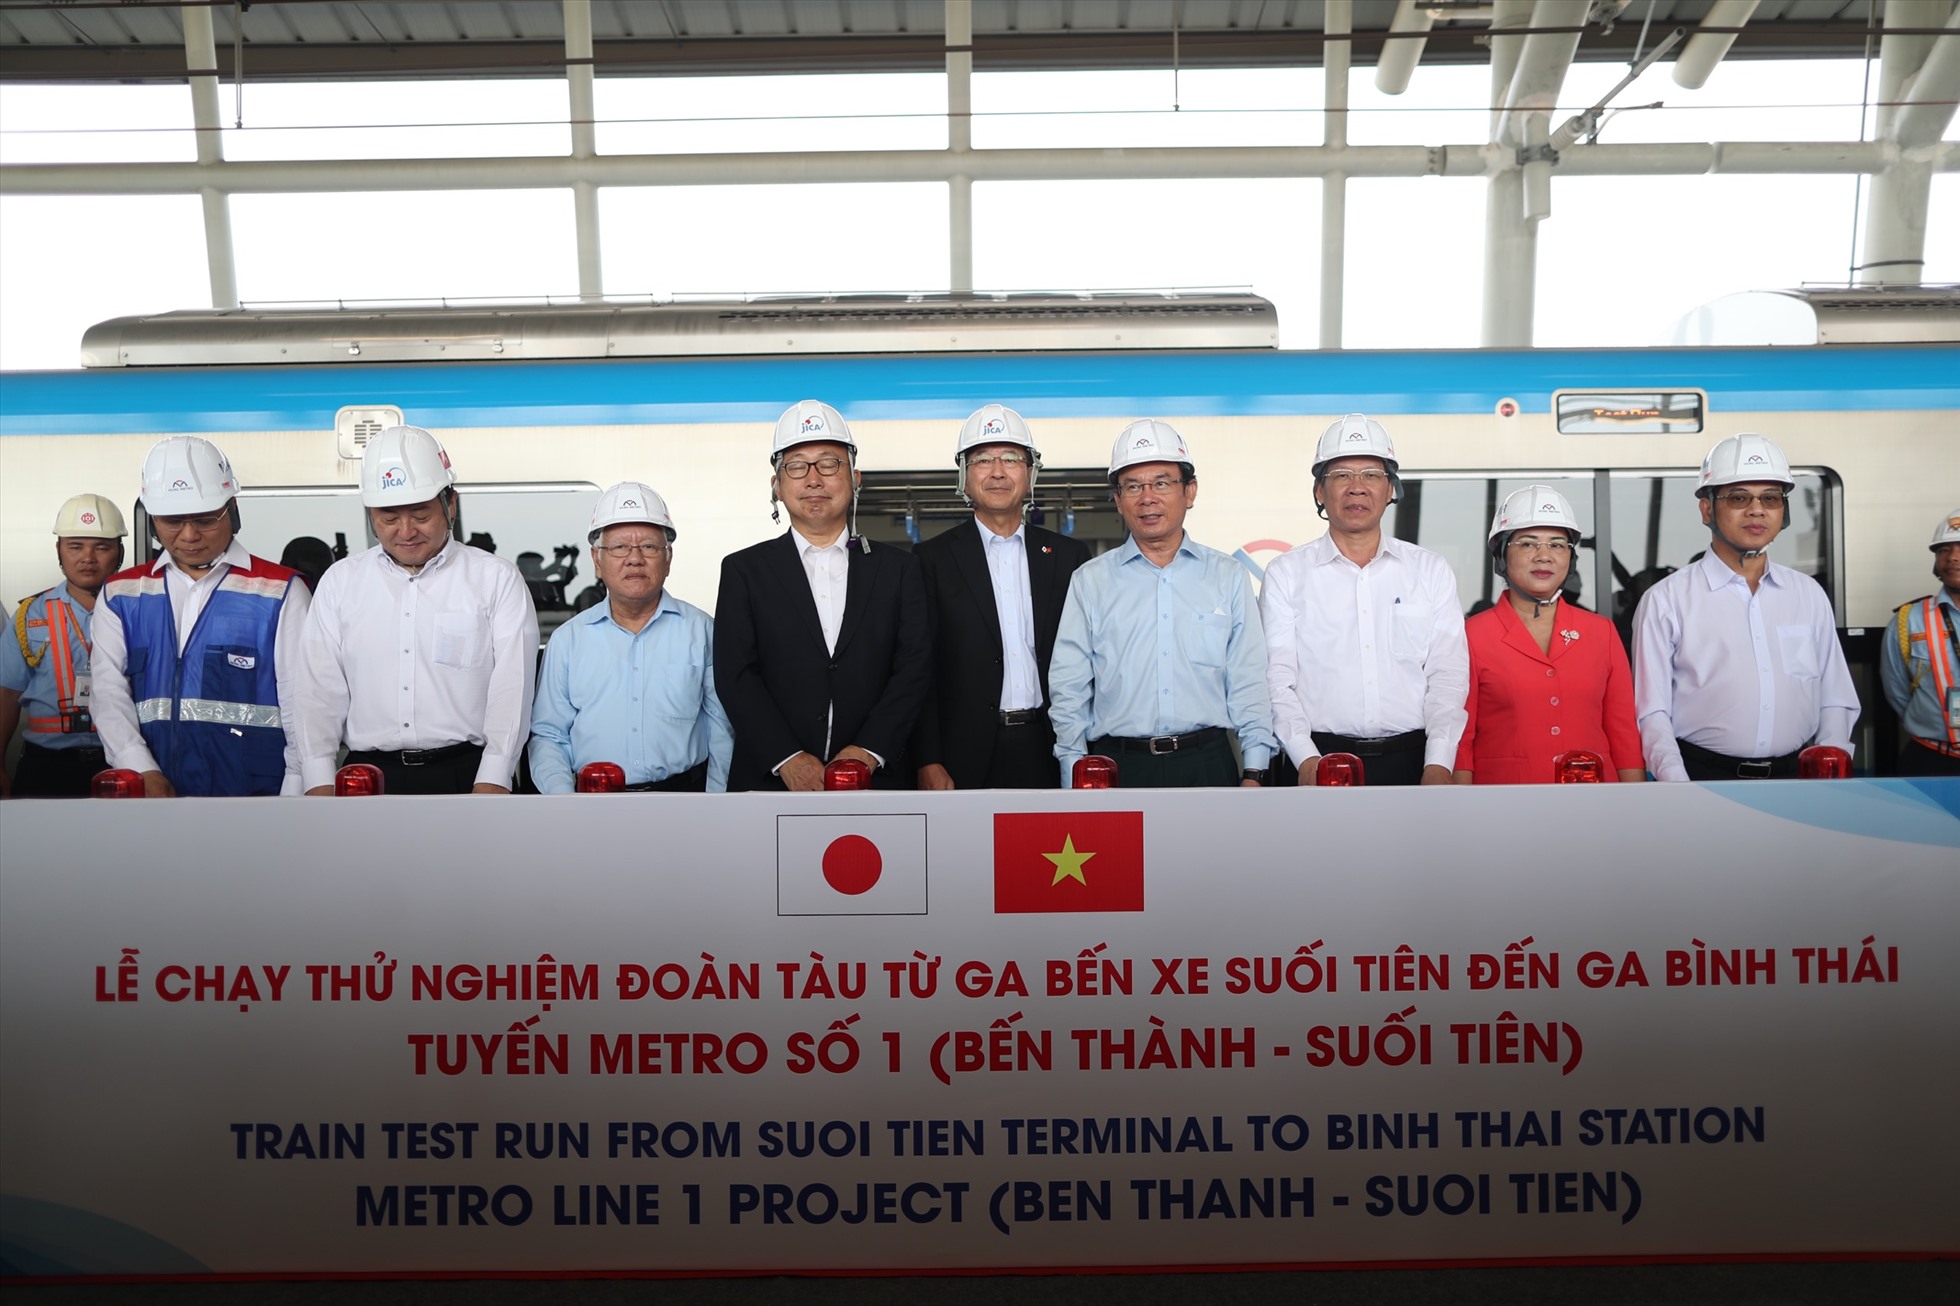 Lãnh đạo TP HCM cùng đại diện phía Nhật Bản tại lễ chạy thử nghiệm tàu Metro Bến Thành - Suối Tiên, sáng 21/